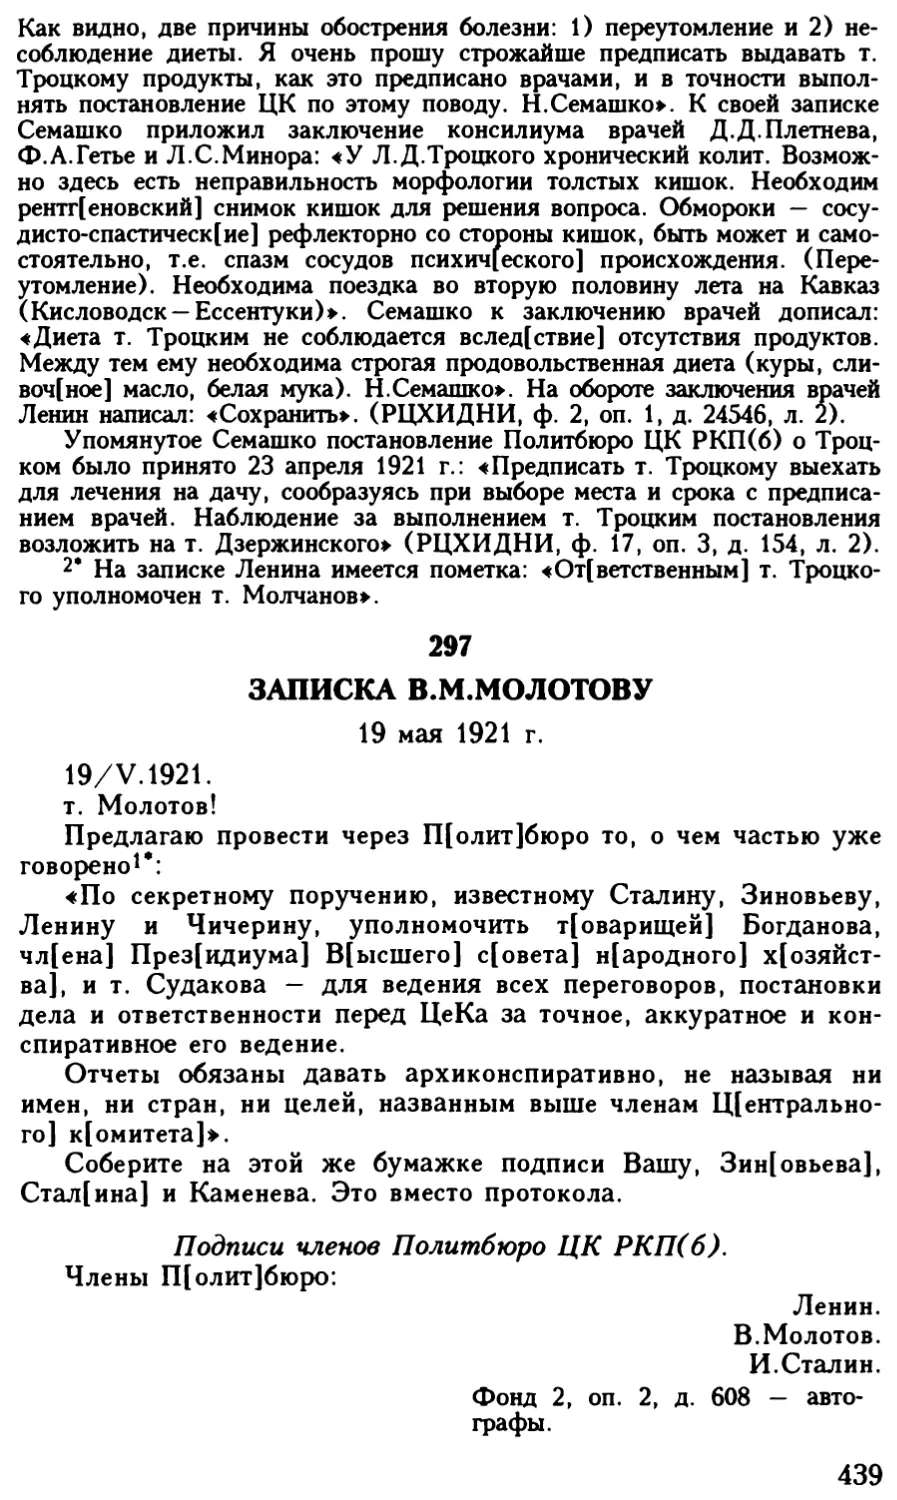 297. Записка В.М.Молотову. 19 мая 1921 г